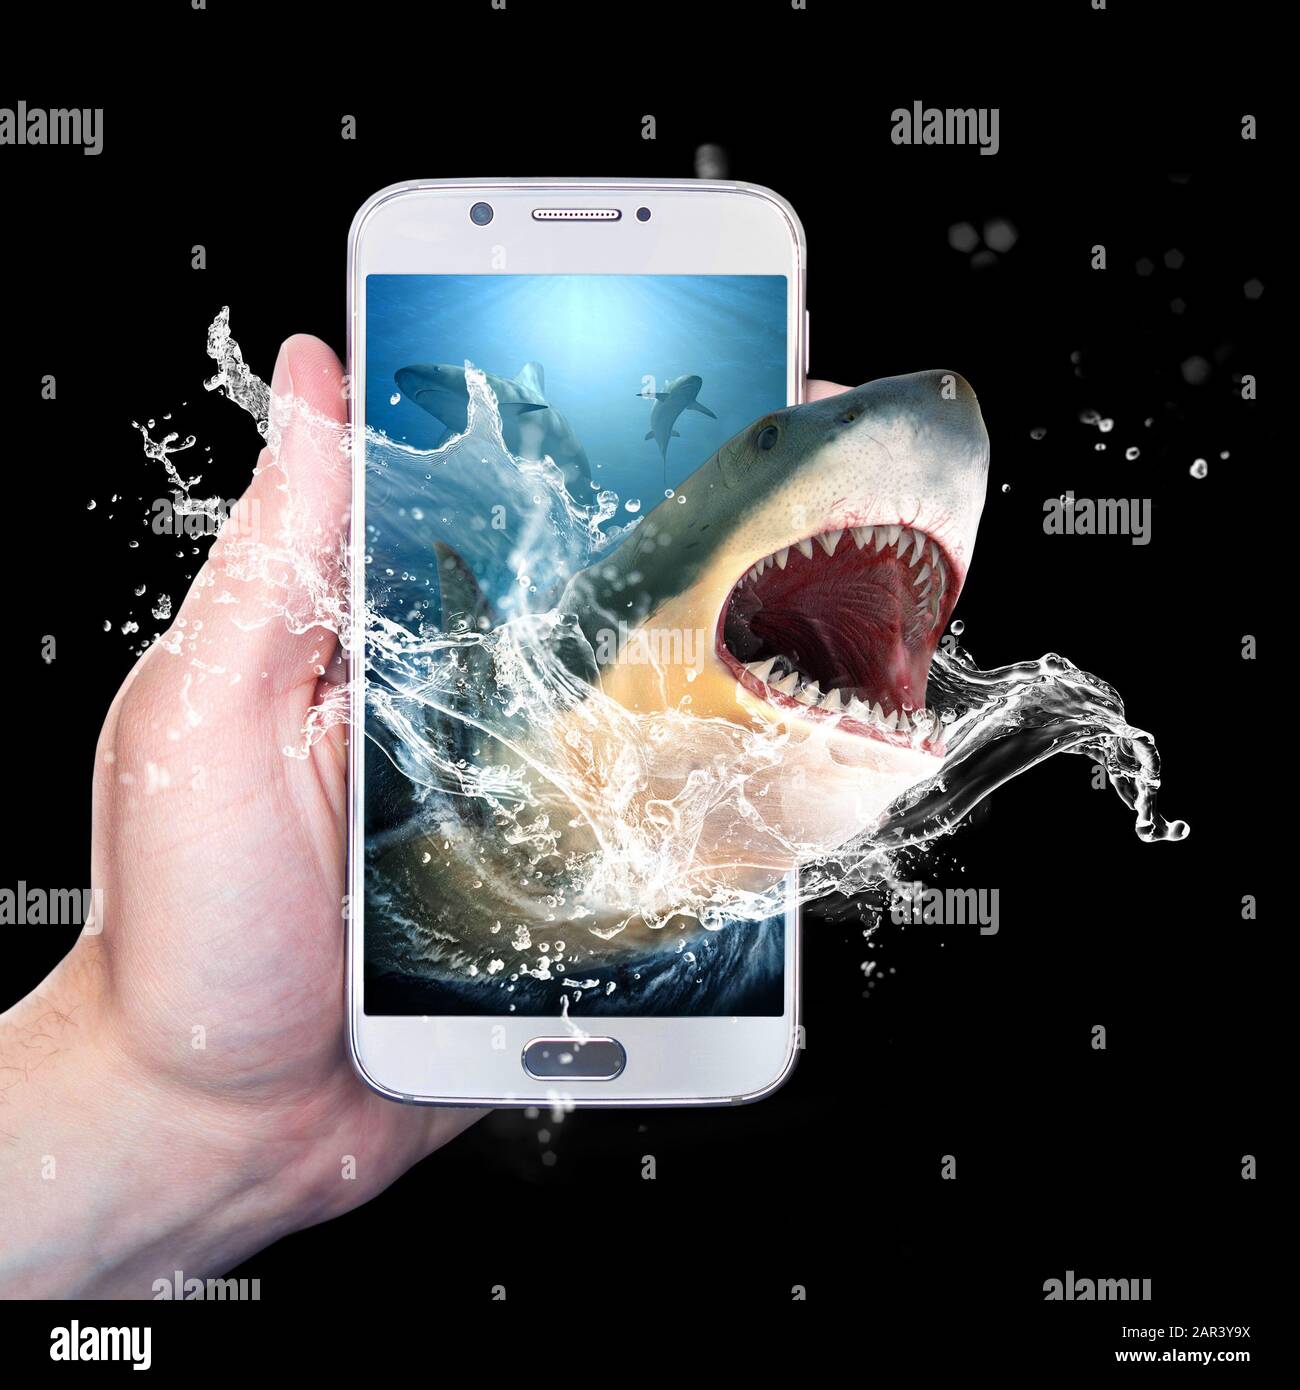 Halten Sie ein Smartphone mit einem Hai, der aus dem Smartphone kommt. Isoliert auf schwarzem Hintergrund. Stockfoto